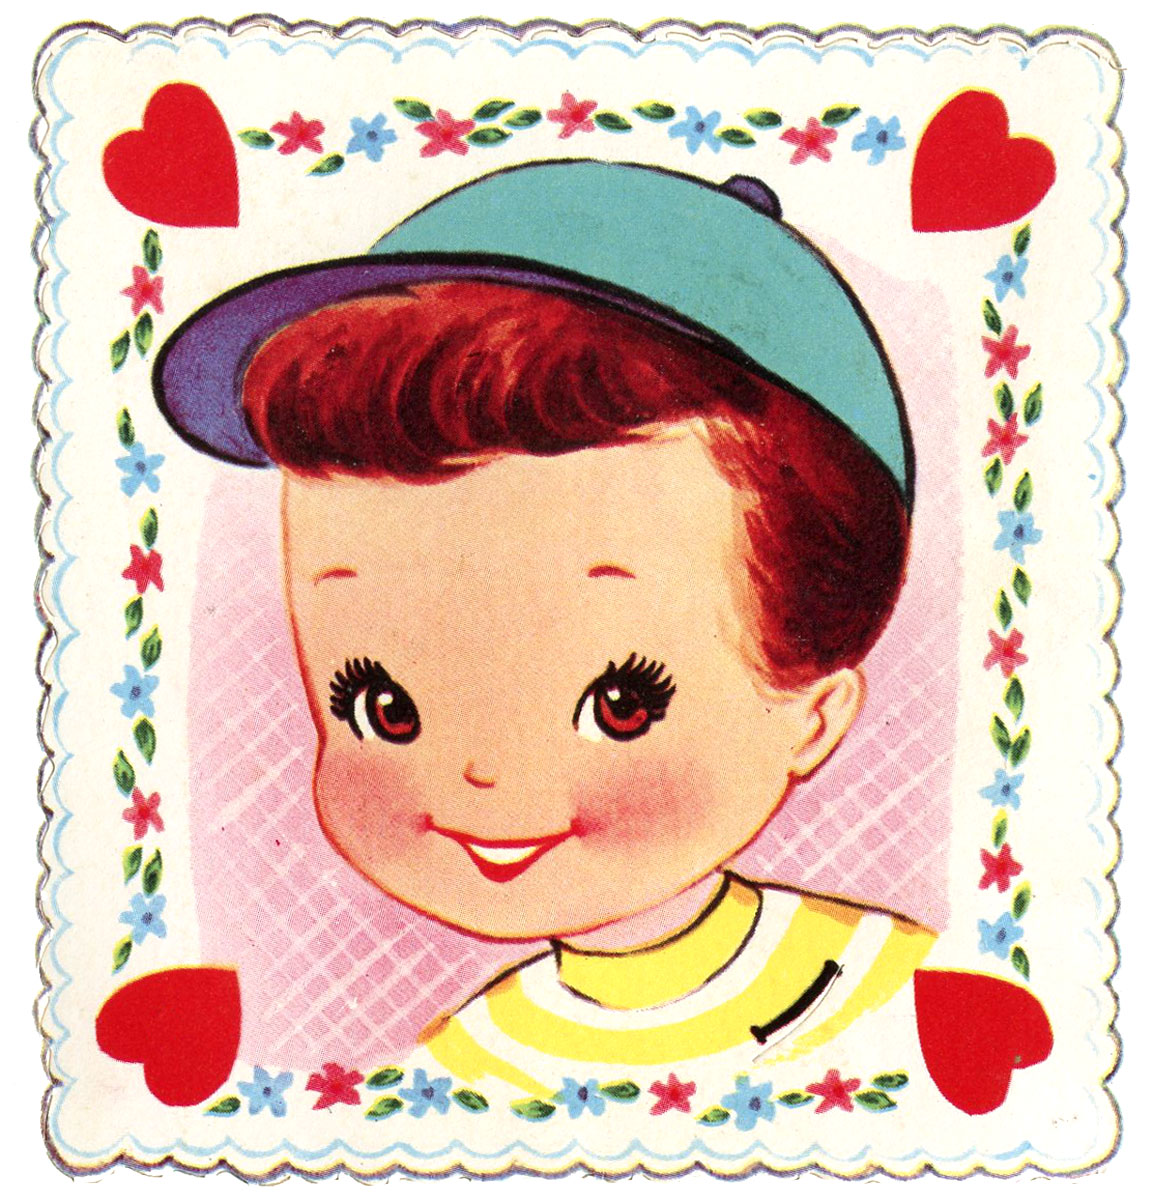 Retro Valentine Graphic - Cute Little Boy - The Graphics Fairy